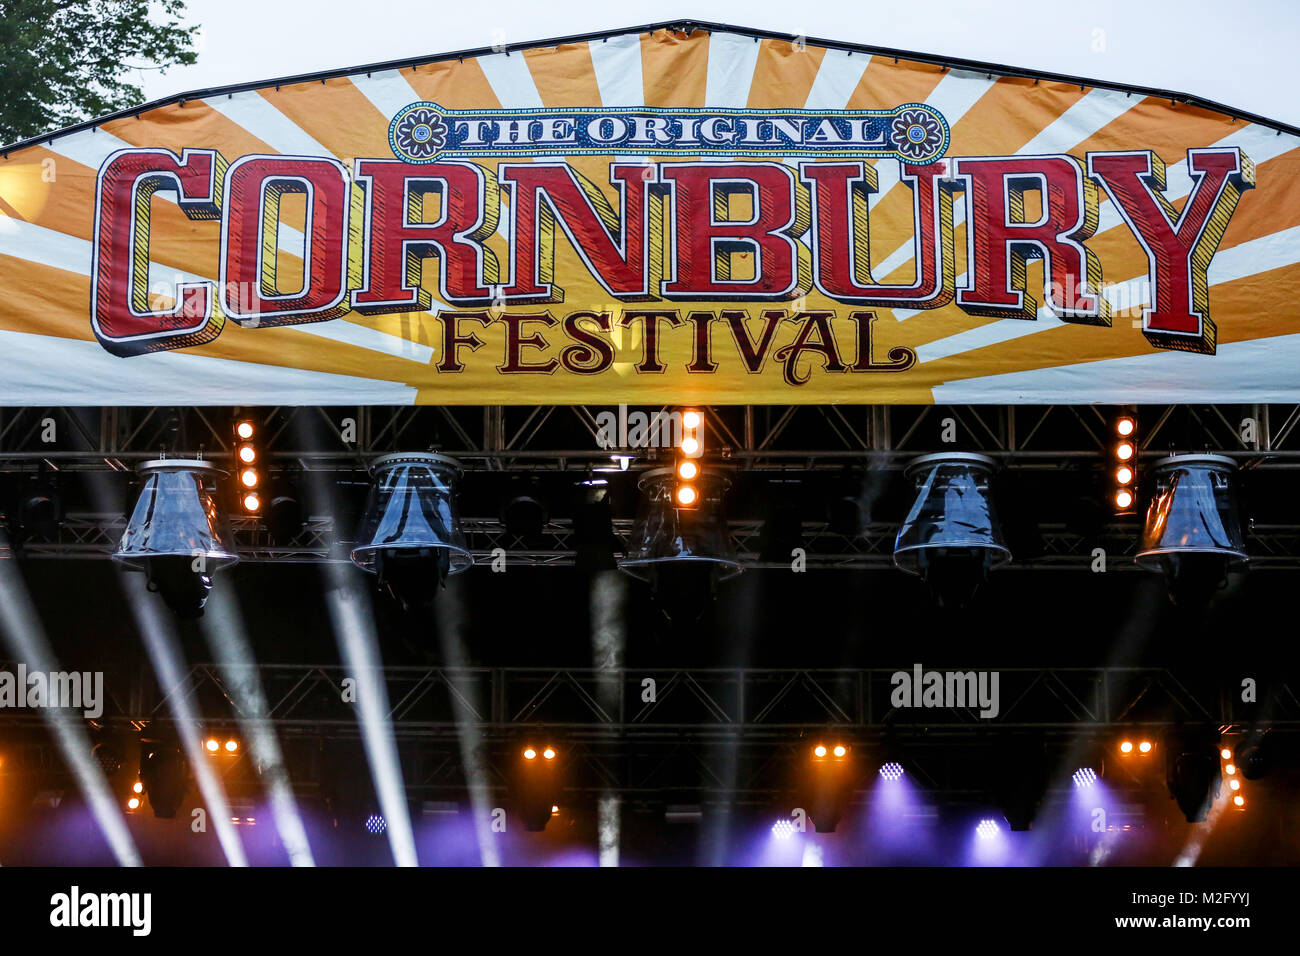 Escenario principal en el Cornbury Music Festival el sábado 8 de julio de 2017 muestra principal banner Cornbury, branding e iluminación: Andy Trevaskis [Crédito] Foto de stock